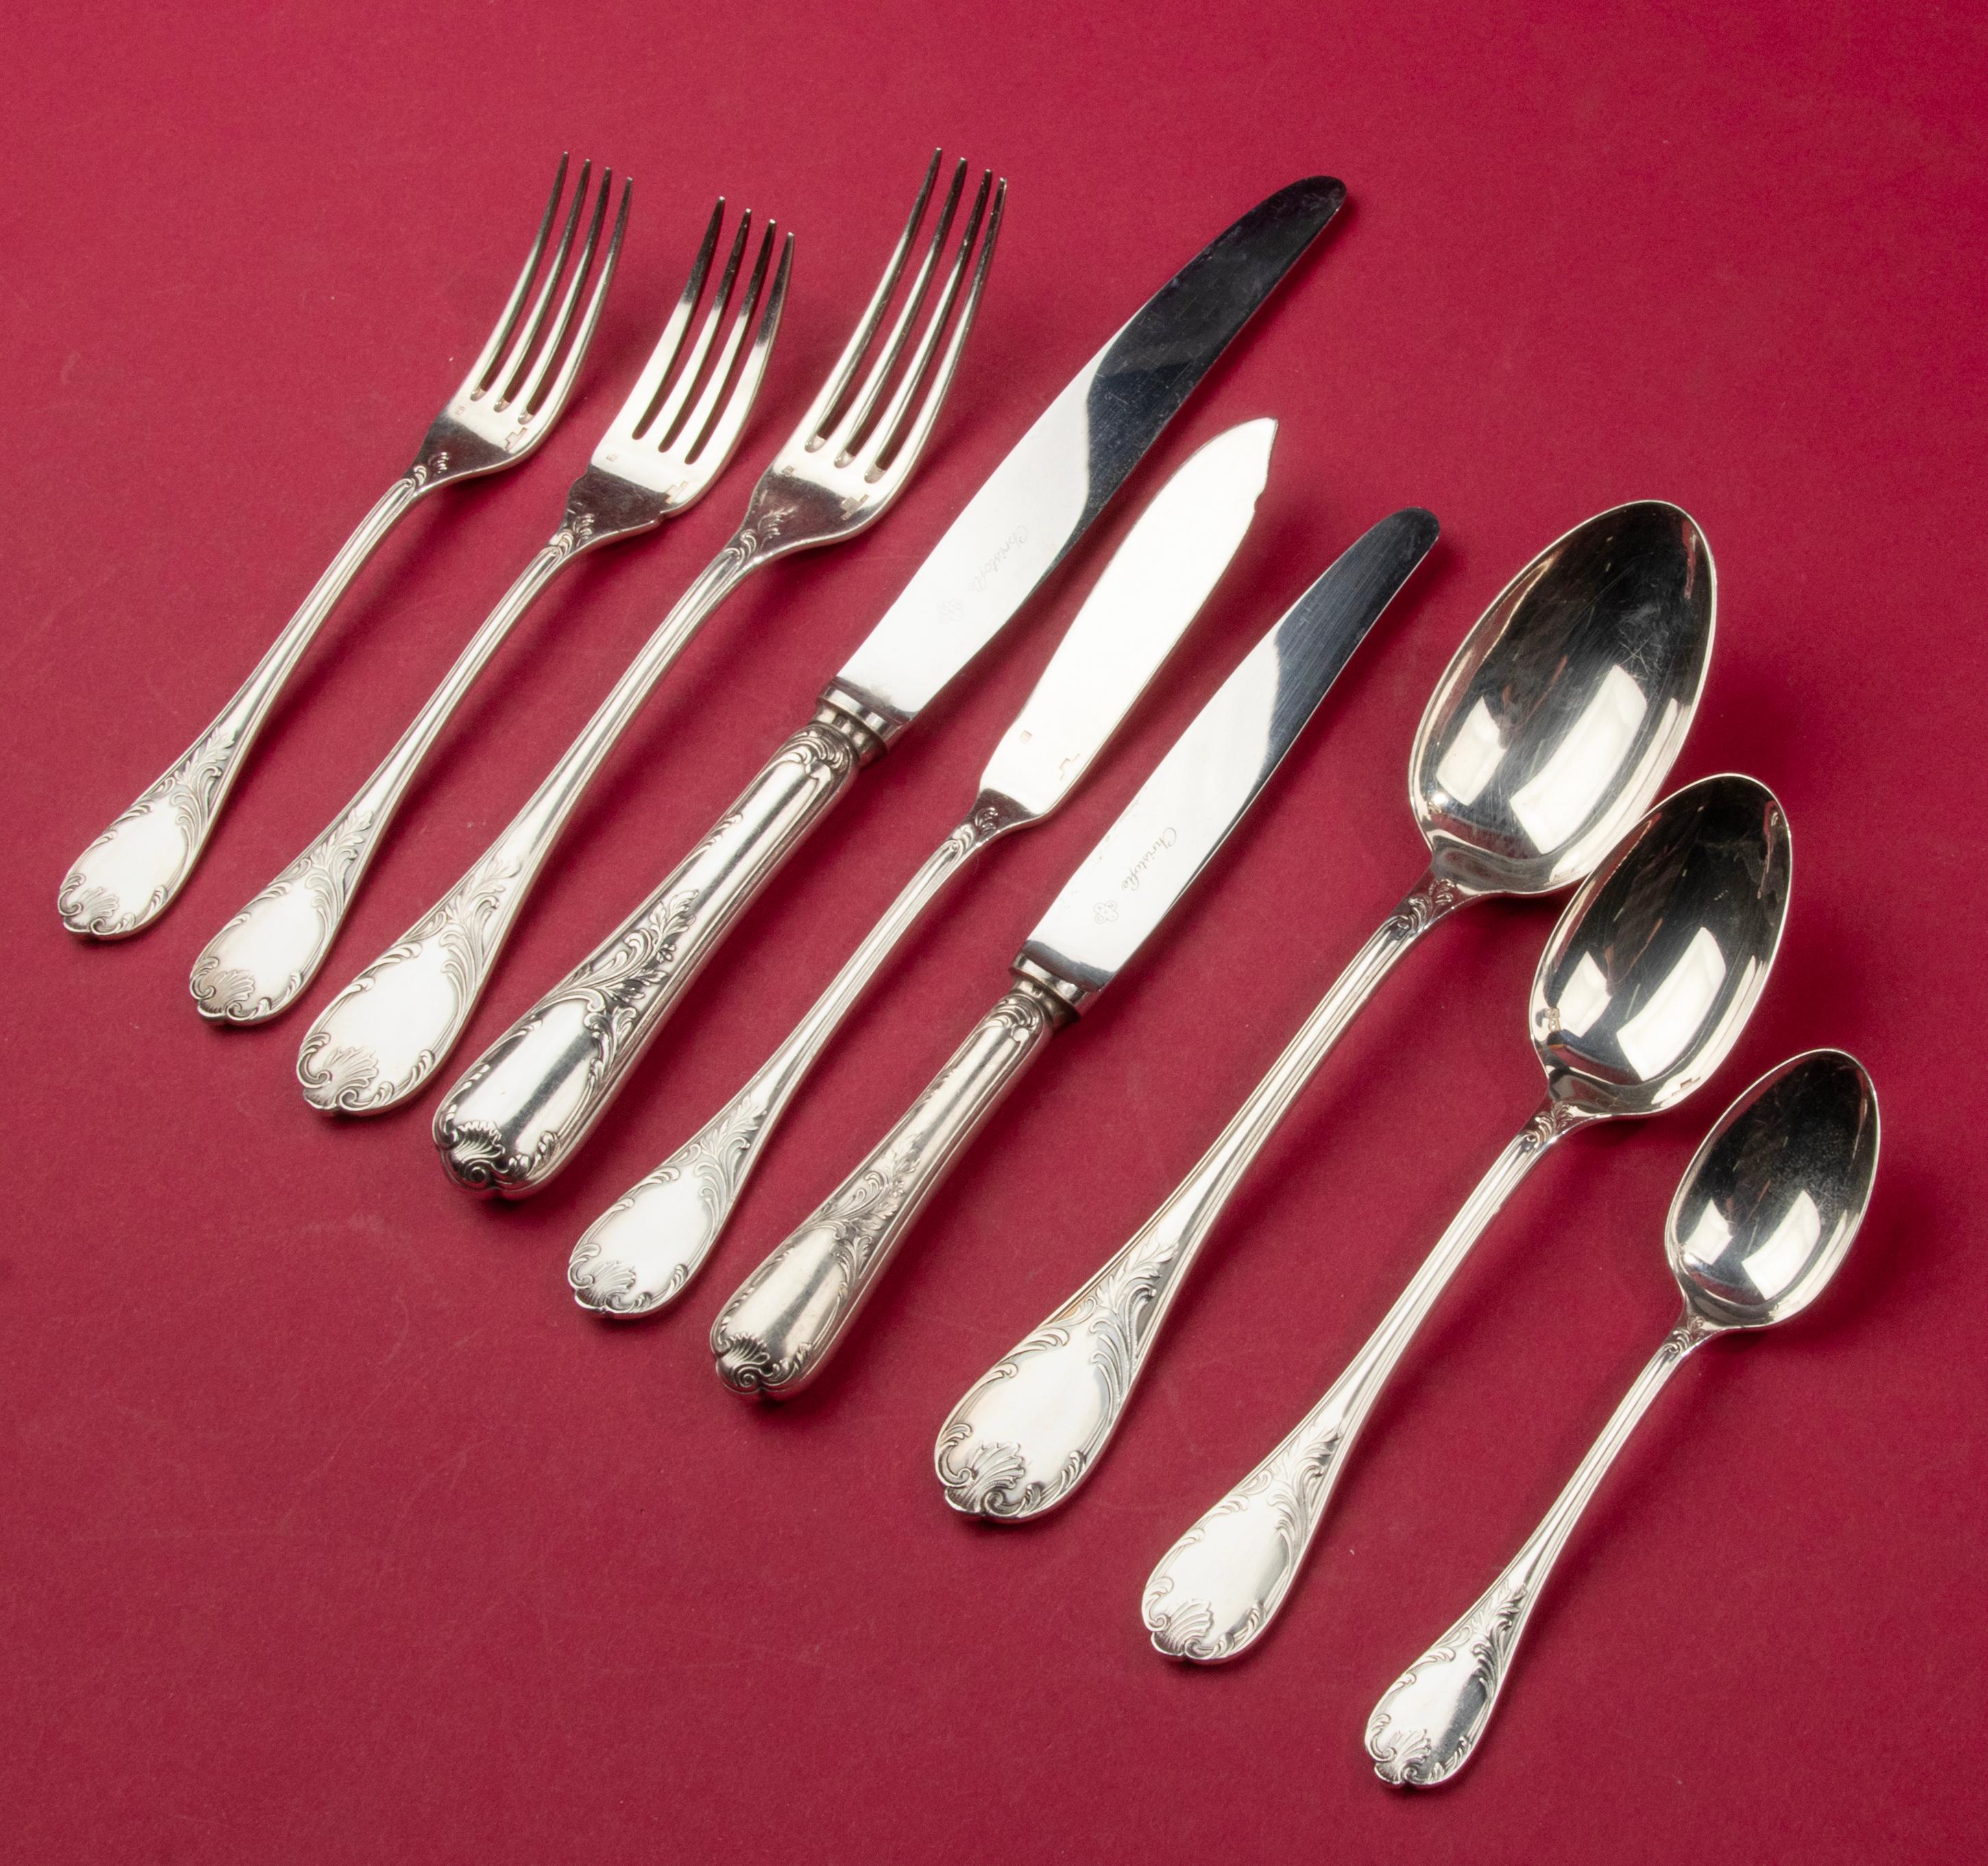 Une belle cantine vintage avec vaisselle en métal argenté pour 12 personnes, fabriquée par la marque française Christofle, de la série Marly. 
- 12 couteaux de table de 24,5 cm de haut 
- 12 fourchettes de table 20,5 cm 
- 12 cuillères de table 20,5